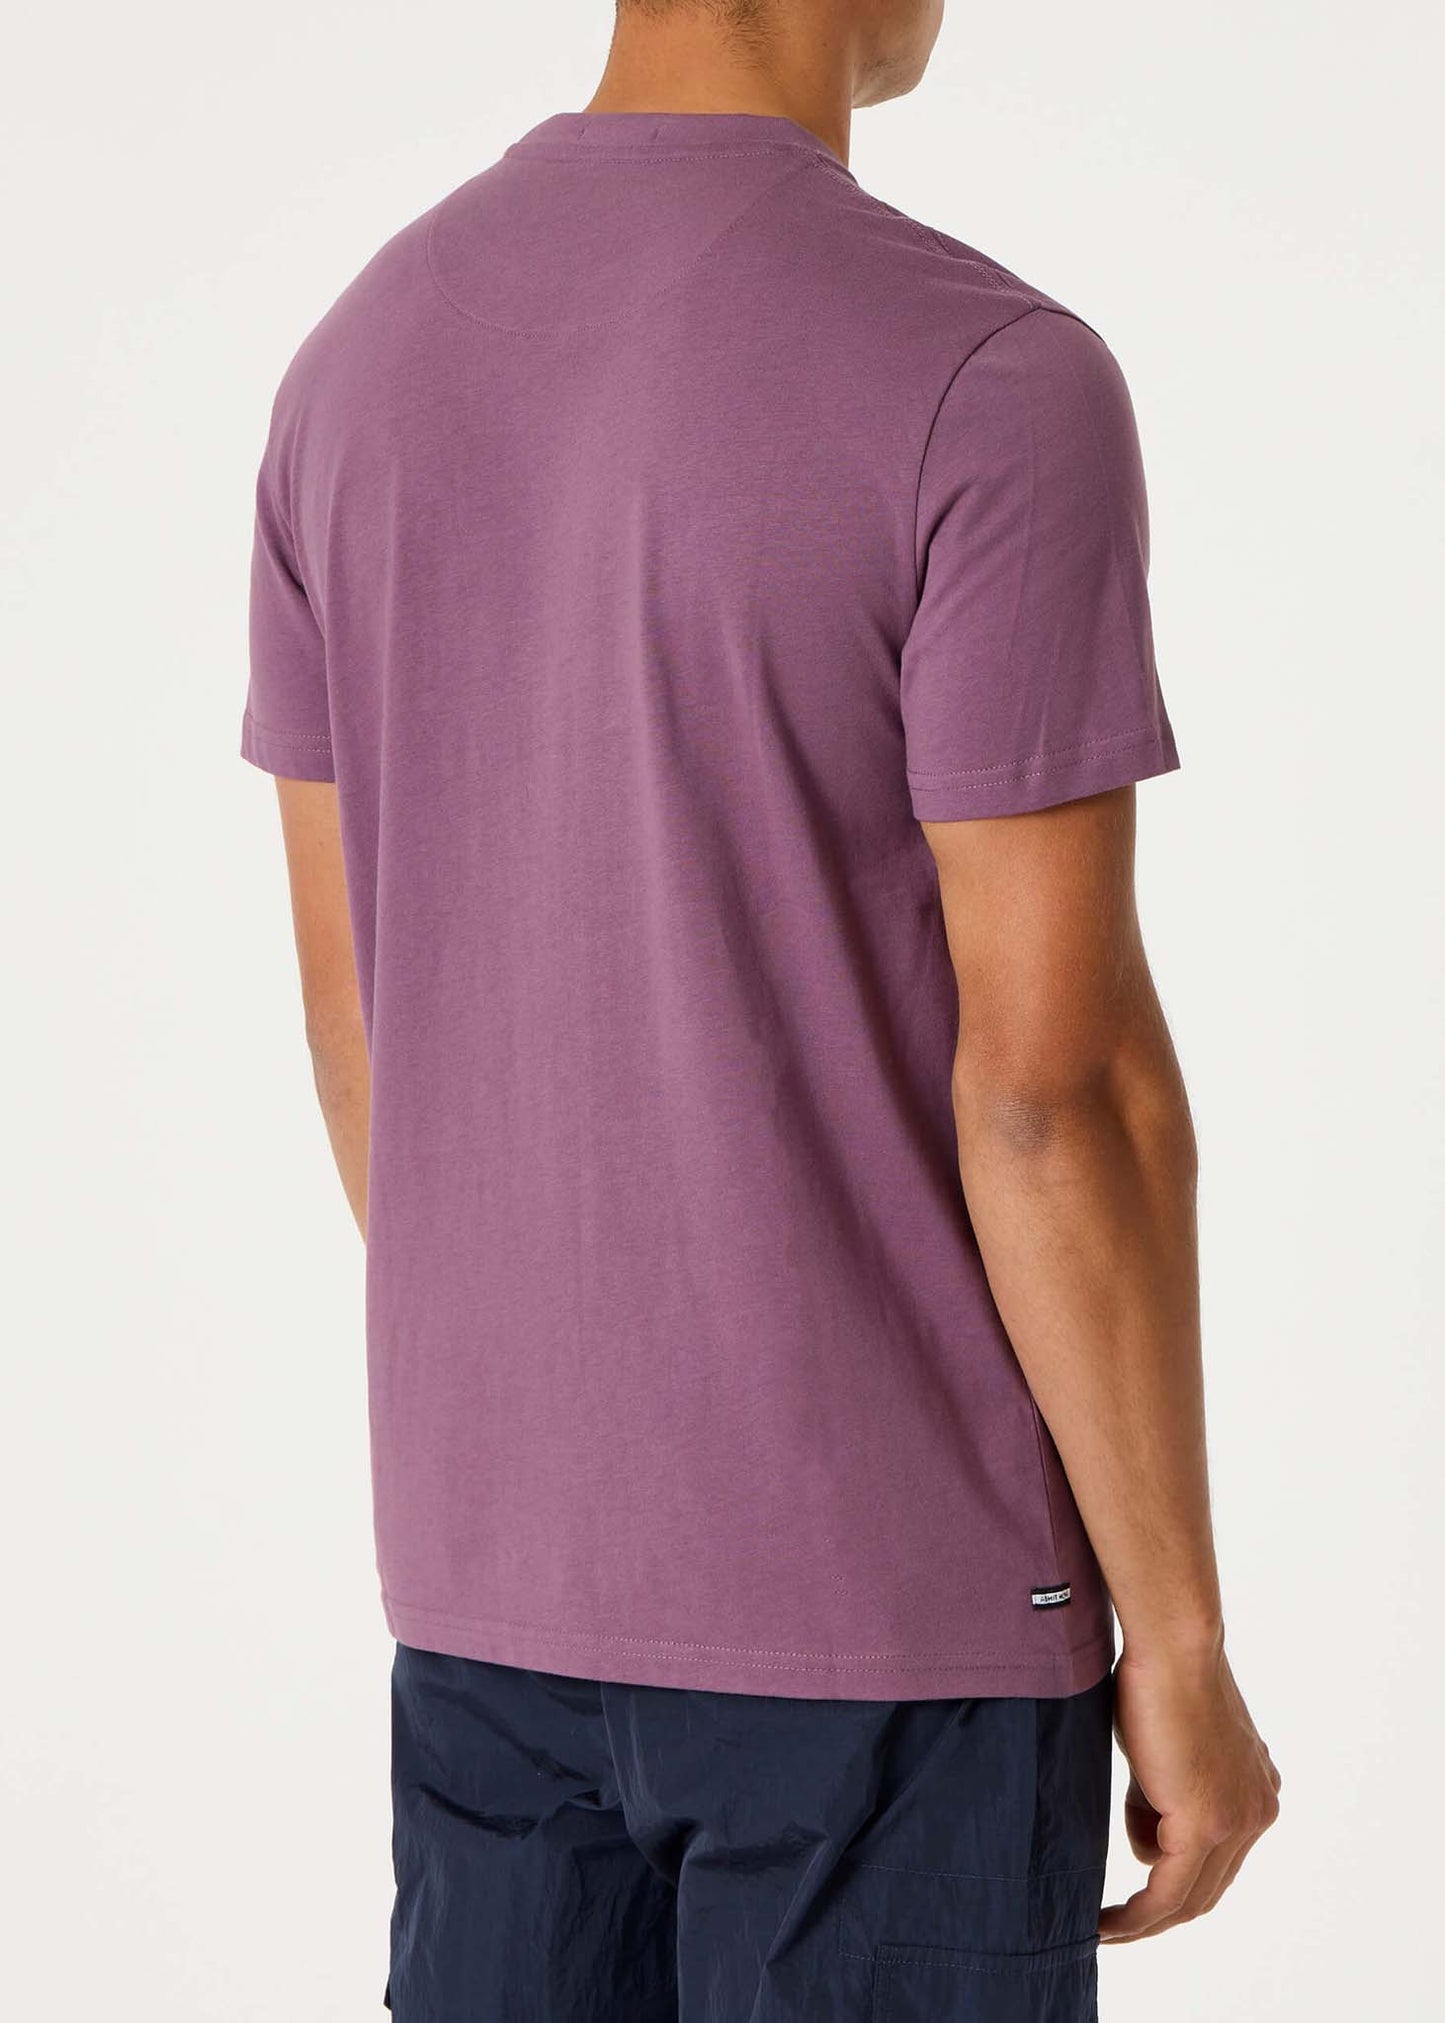 weekend offender t-shirt purple paars